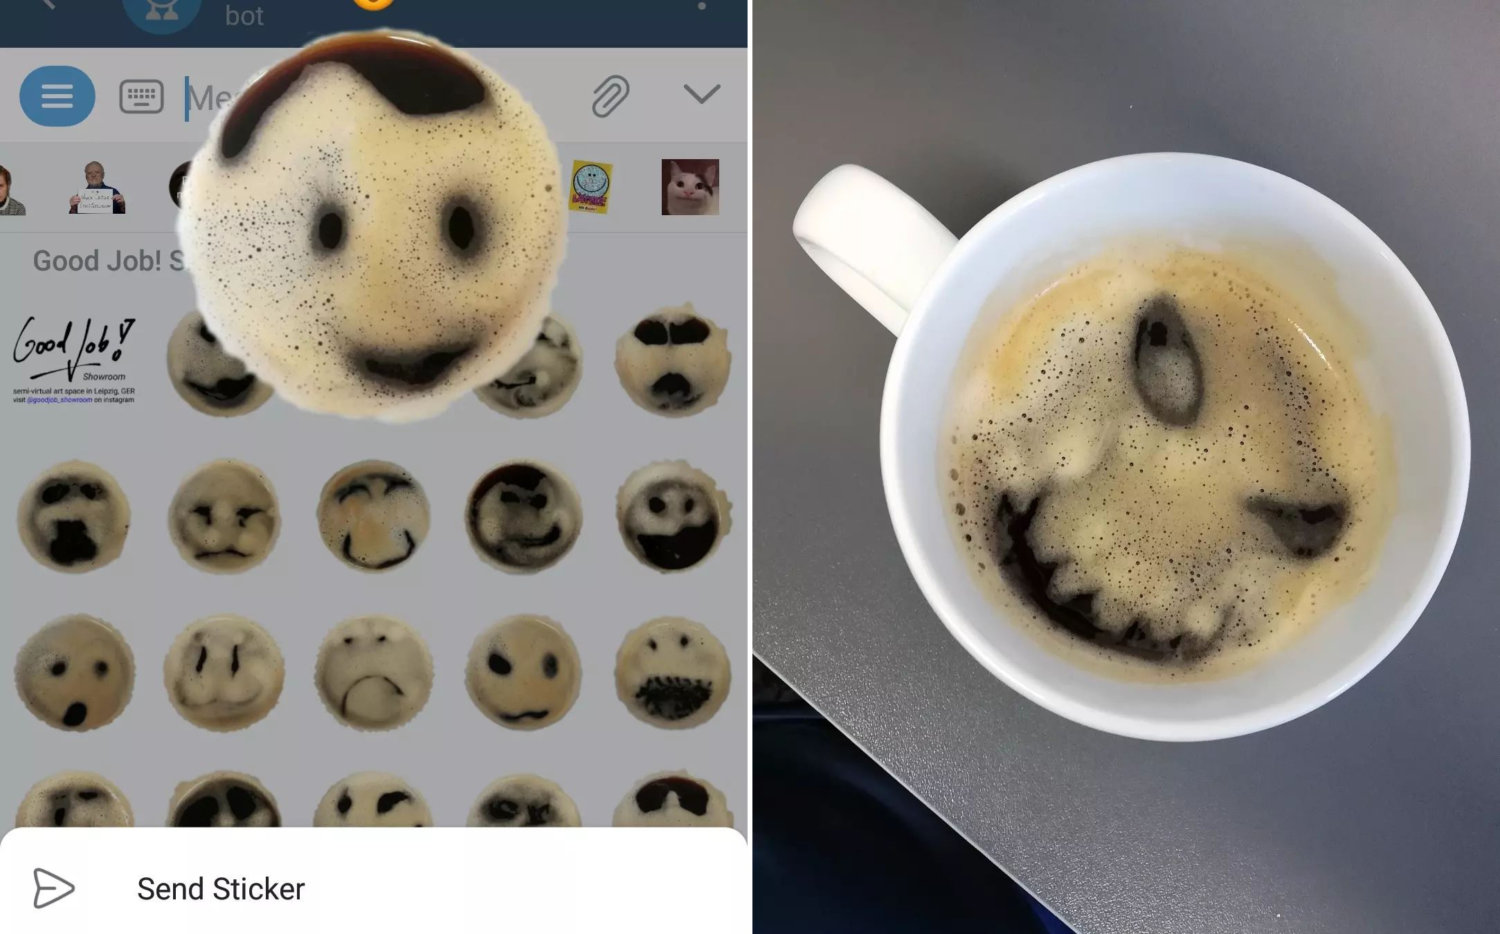 Links das Good Job! Showroom Emoji Stickerset – die Telegram-Oberfläche zeigt mehrere Gesichter in Kaffee. Rechts eine Kaffeetasse mit Gesicht im Schaum.